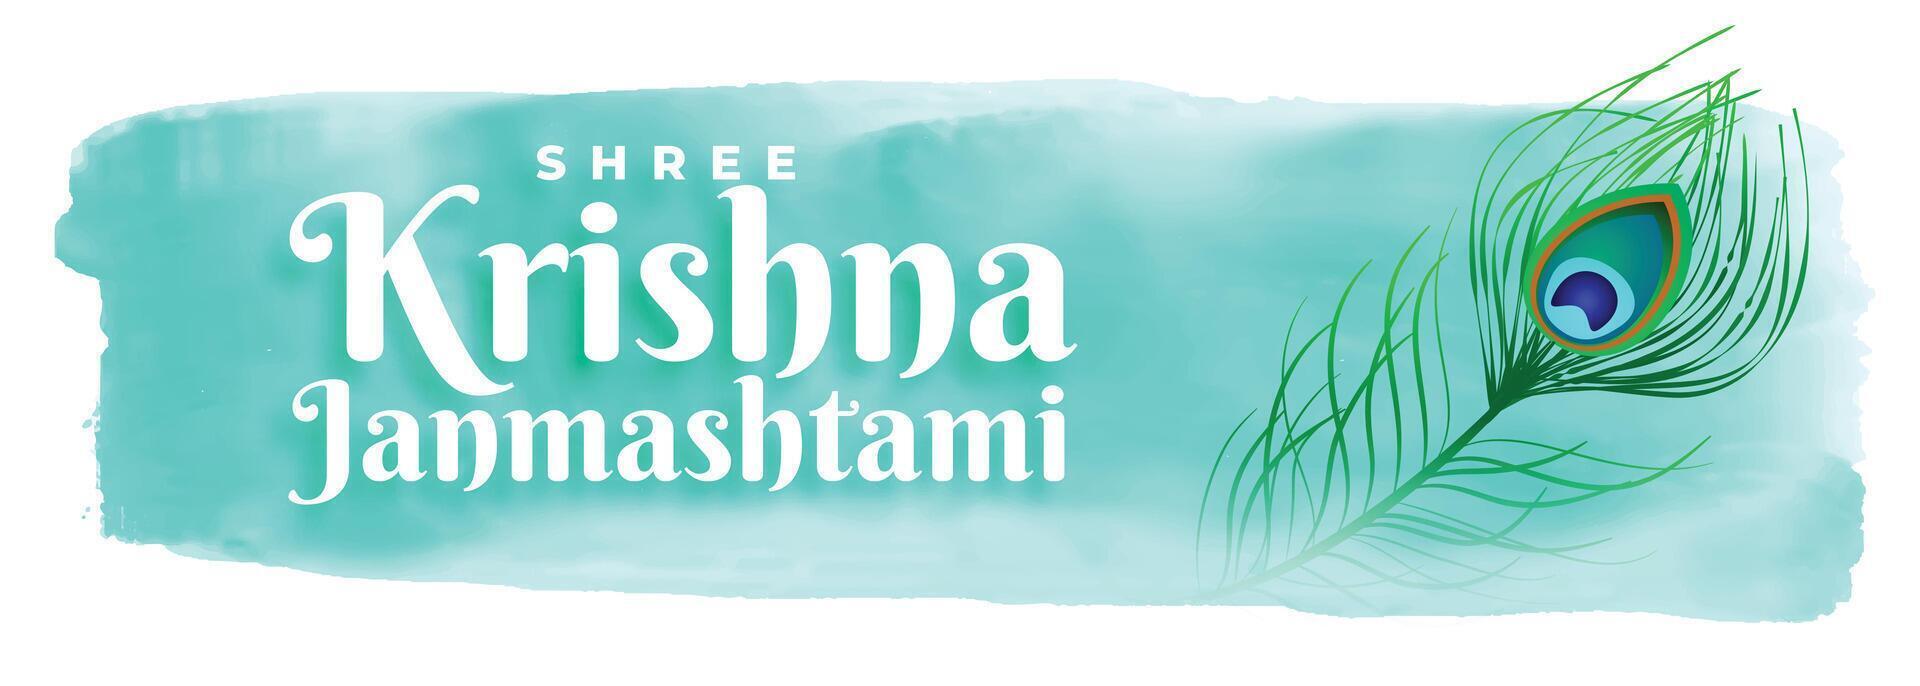 content krishna janmashtami Festival aquarelle bannière conception vecteur